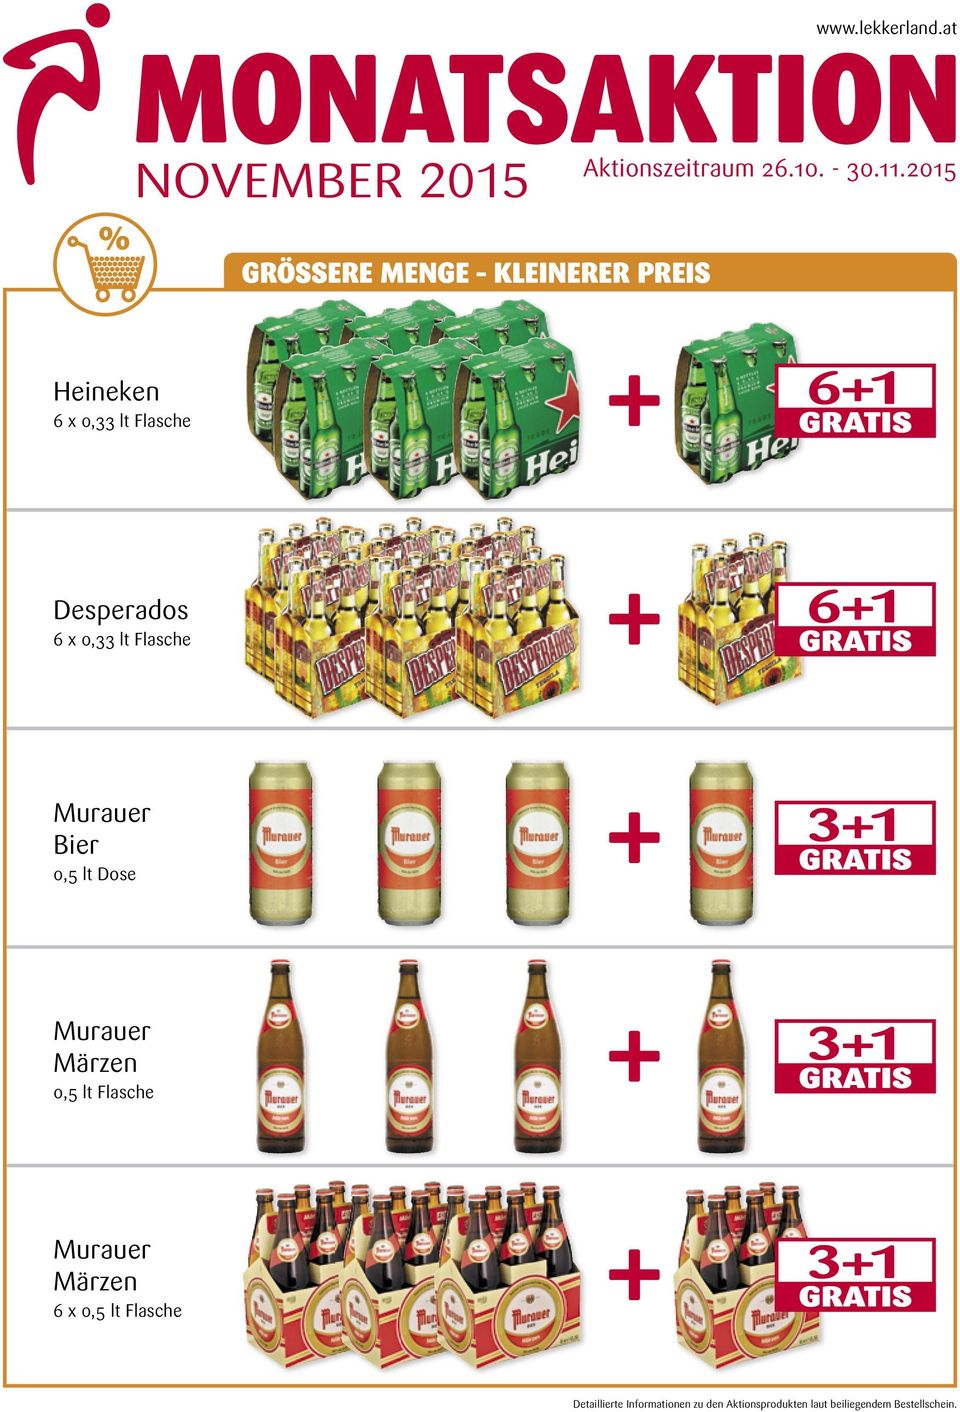 Murauer Bier 0,5 lt Dose 3+1 Murauer Märzen 0,5